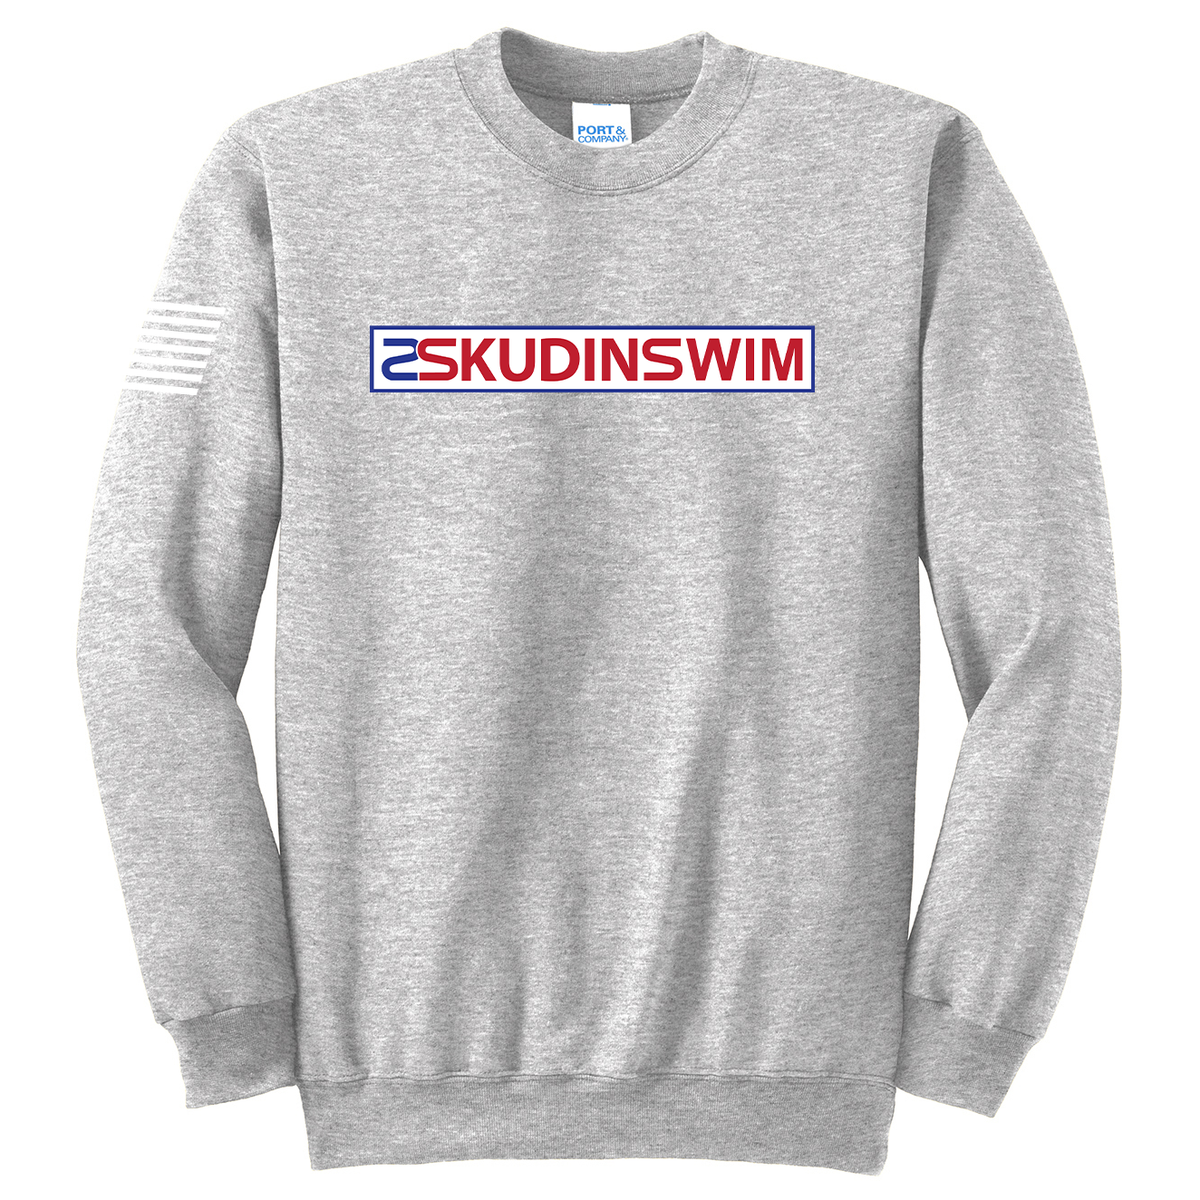 Skudin Swim Crew Neck Sweater